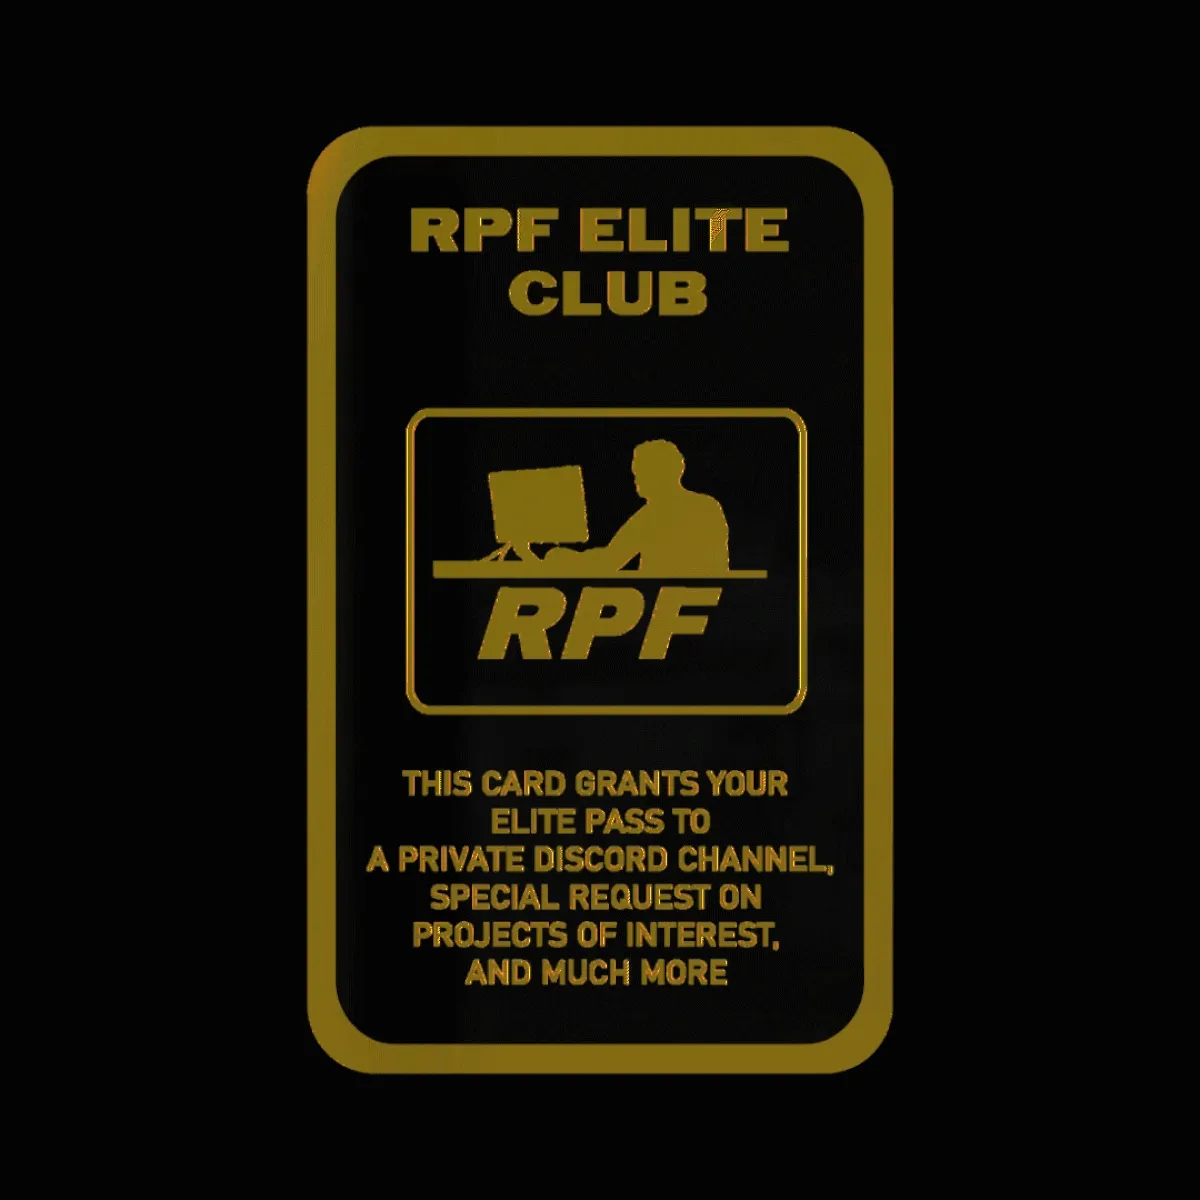 RPF ELITE CLUB